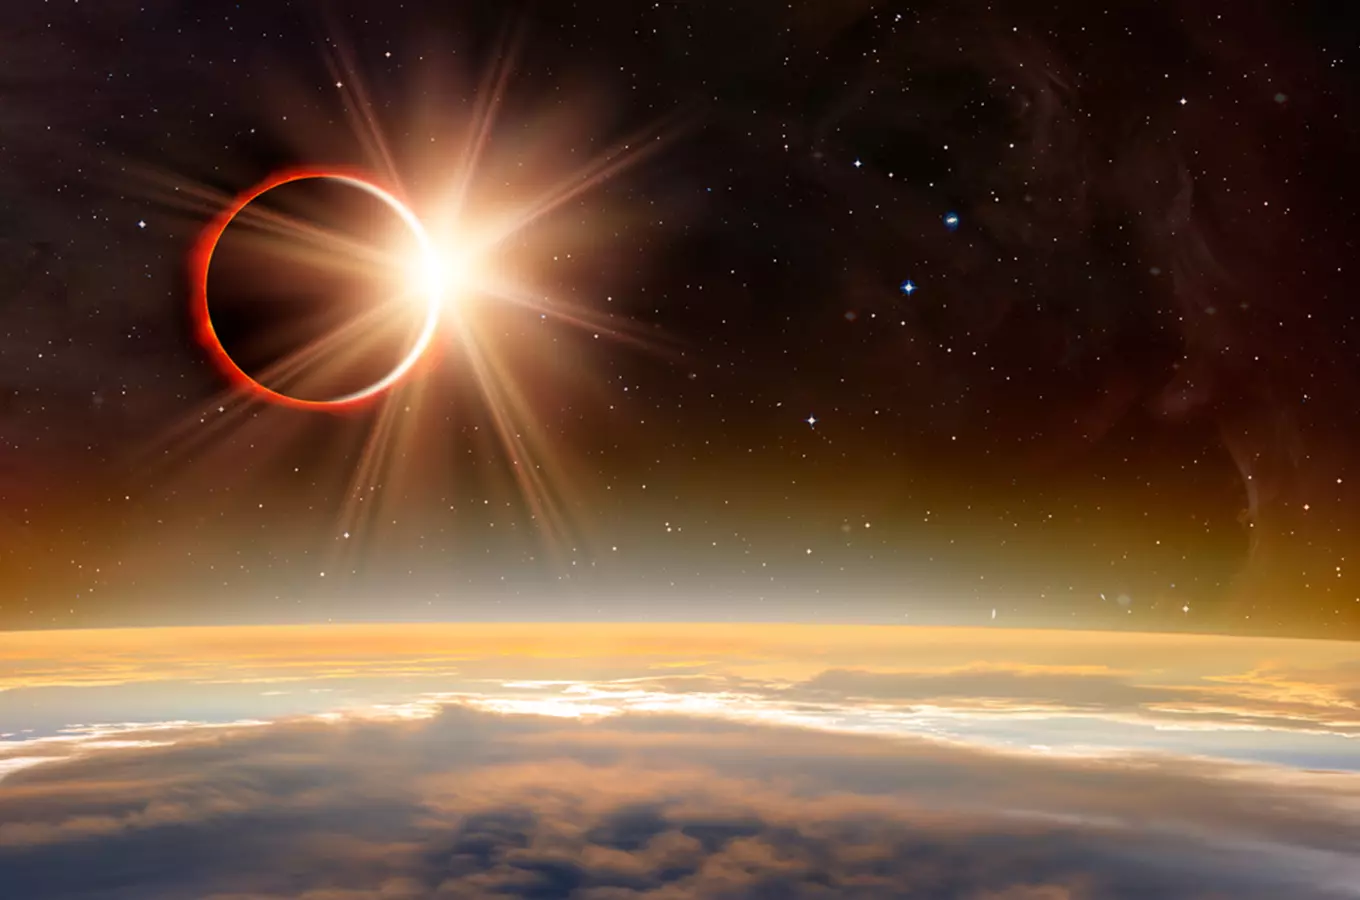 Částečné zatmění Slunce 10. června: Jediné z našeho území pozorovatelné zatmění Slunce letošního rok